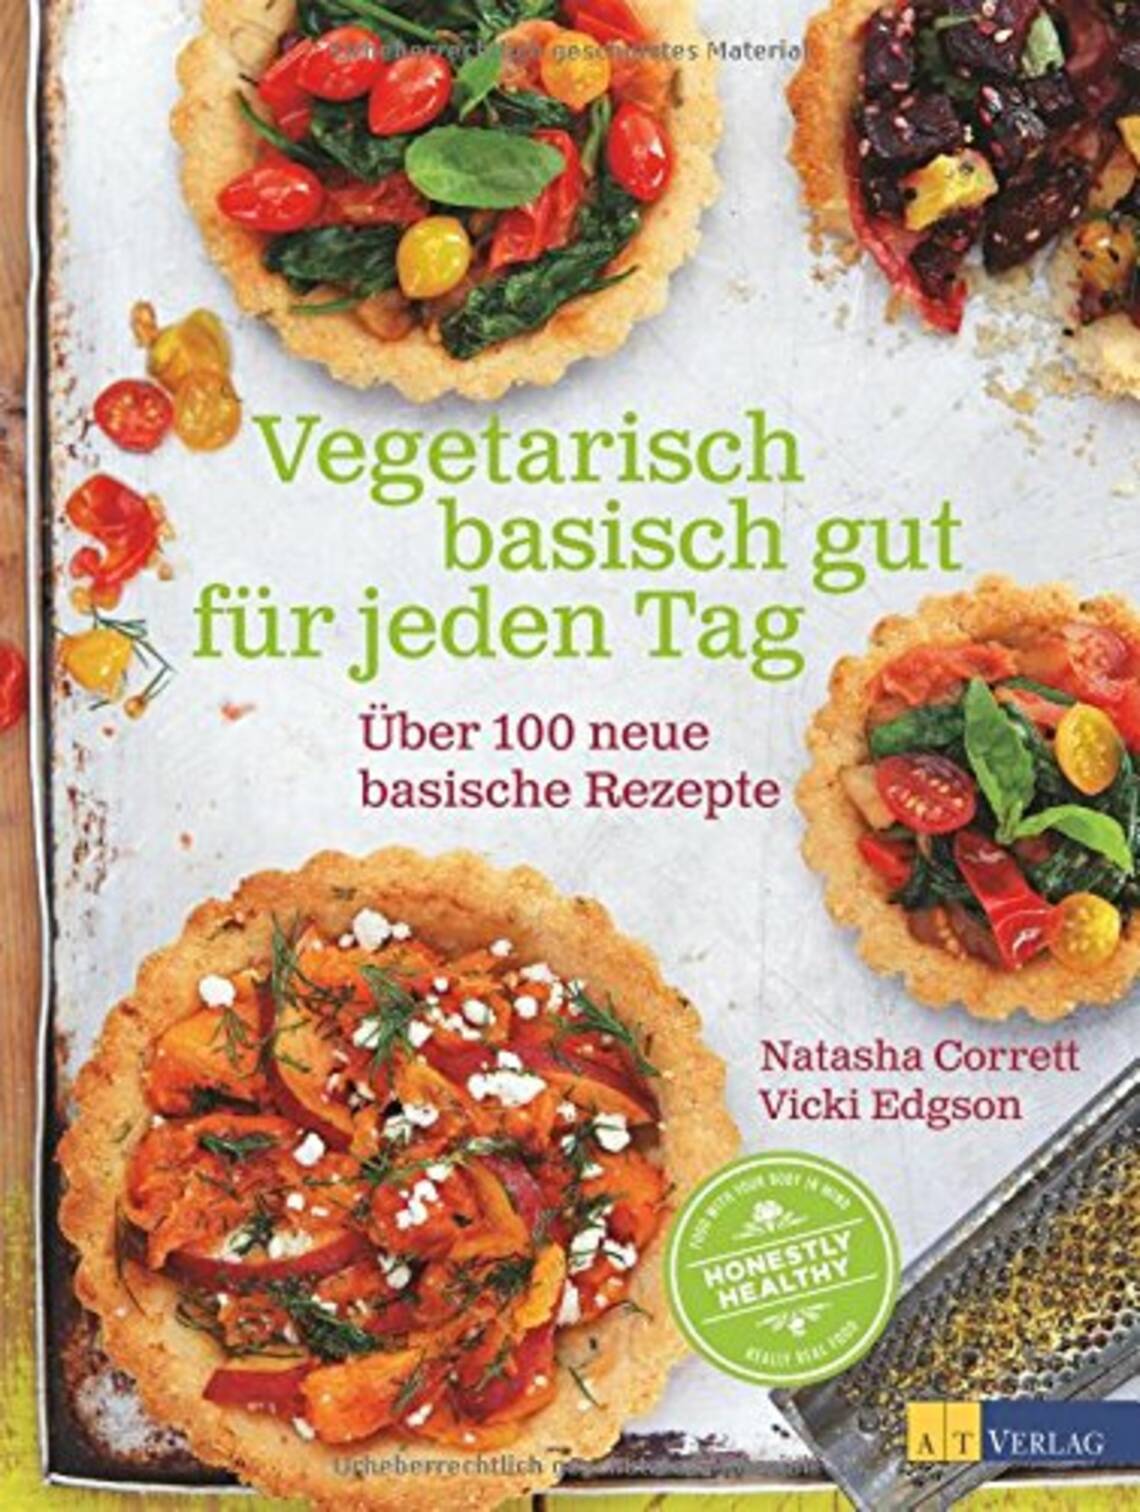 Vegetarisch basisch gut für jeden Tag von Natasha Corrett, Natasha Corrett, Vicki Edgson